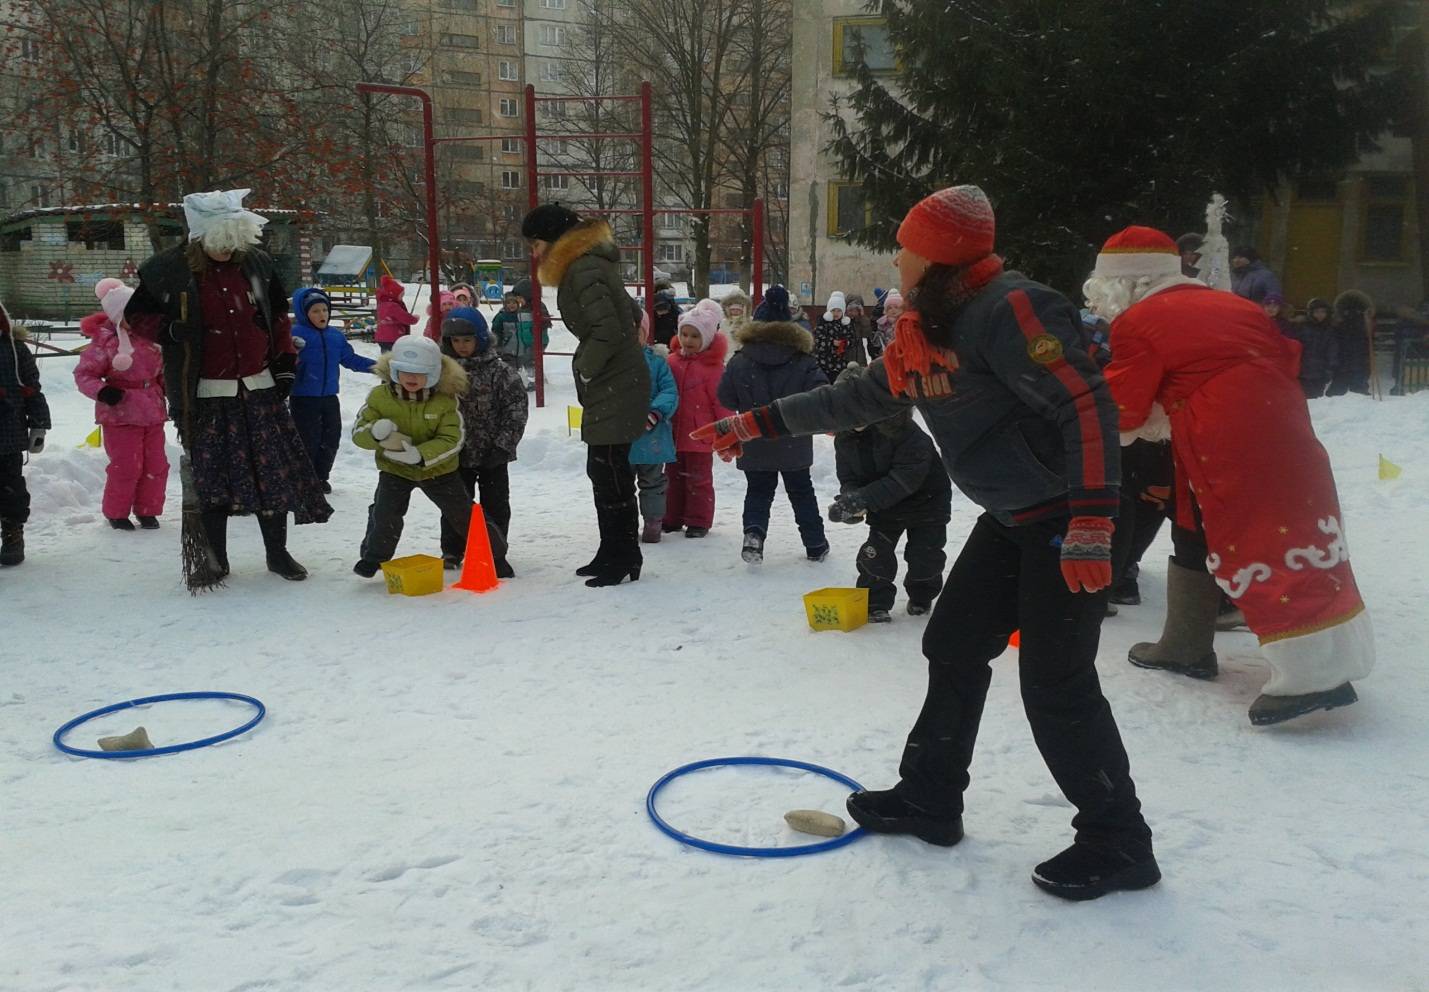 Cценарий «зимние забавы на улице в детском саду» — уличные зимние игры, актуальные для любого возраста